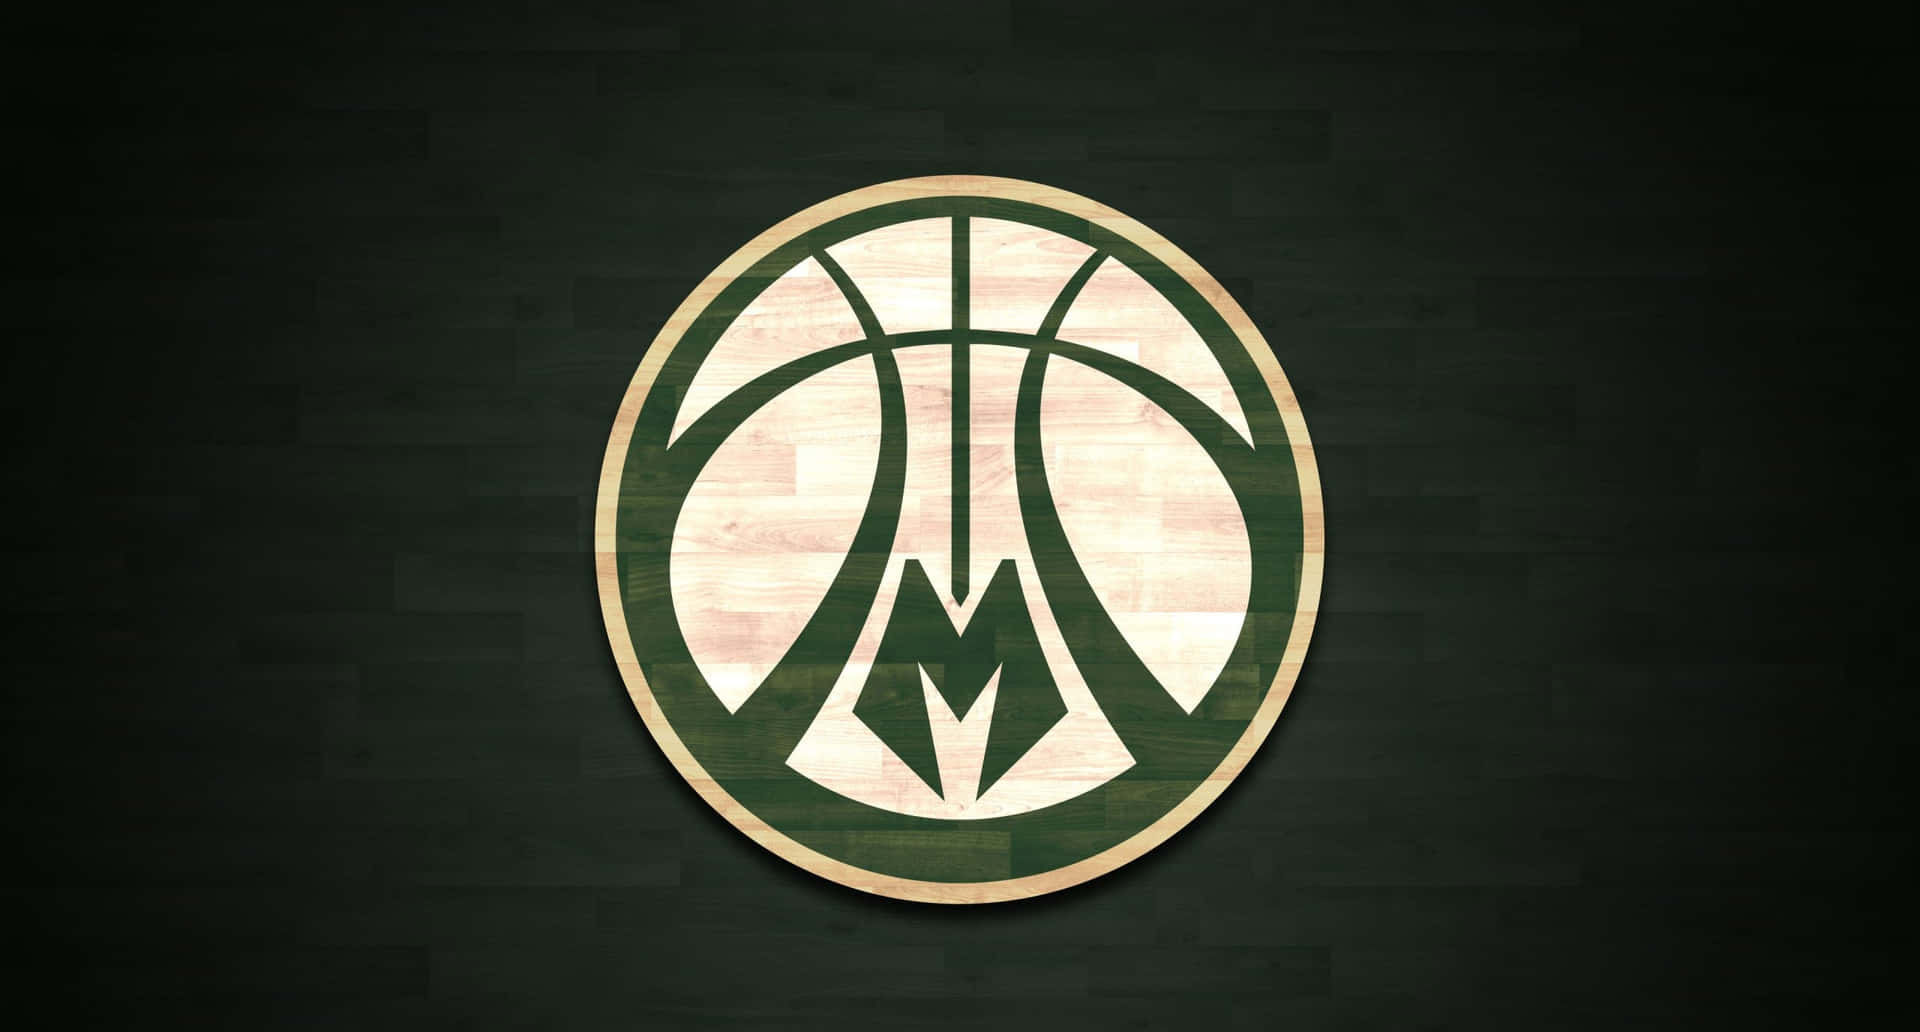 Det ikoniske logo for Milwaukee Bucks NBA basketballteam. Wallpaper